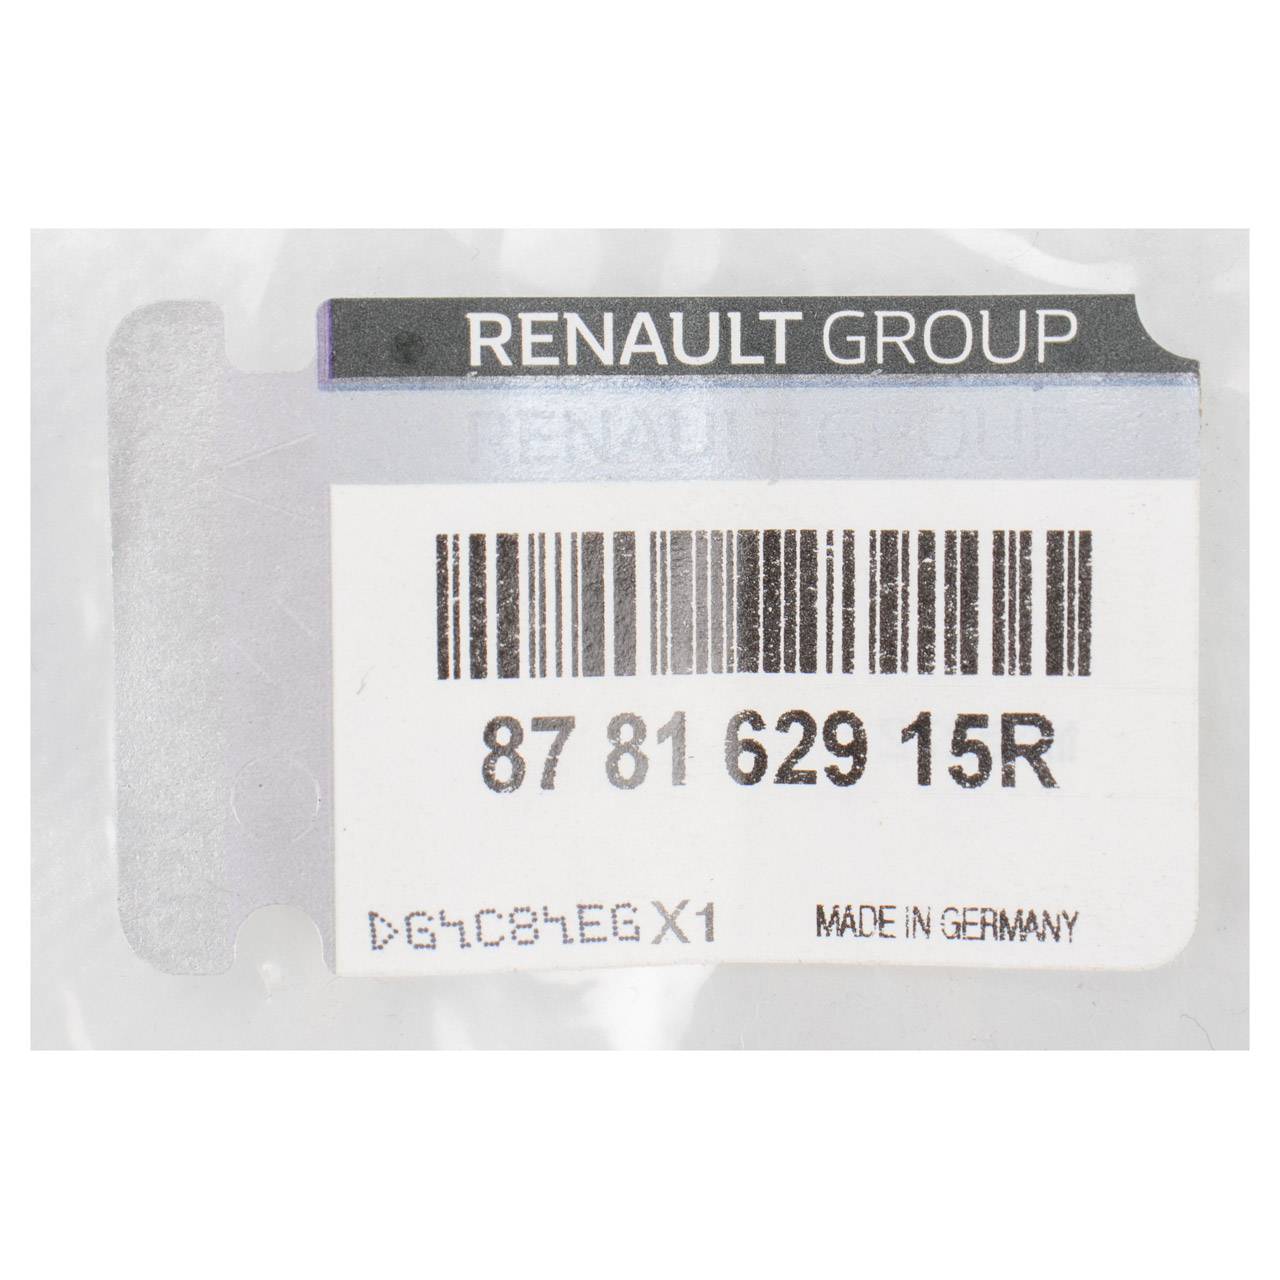 ORIGINAL Renault Gurtschloss Sicherheitsgurt Scenic 3 Megane 3 vorne 878162915R